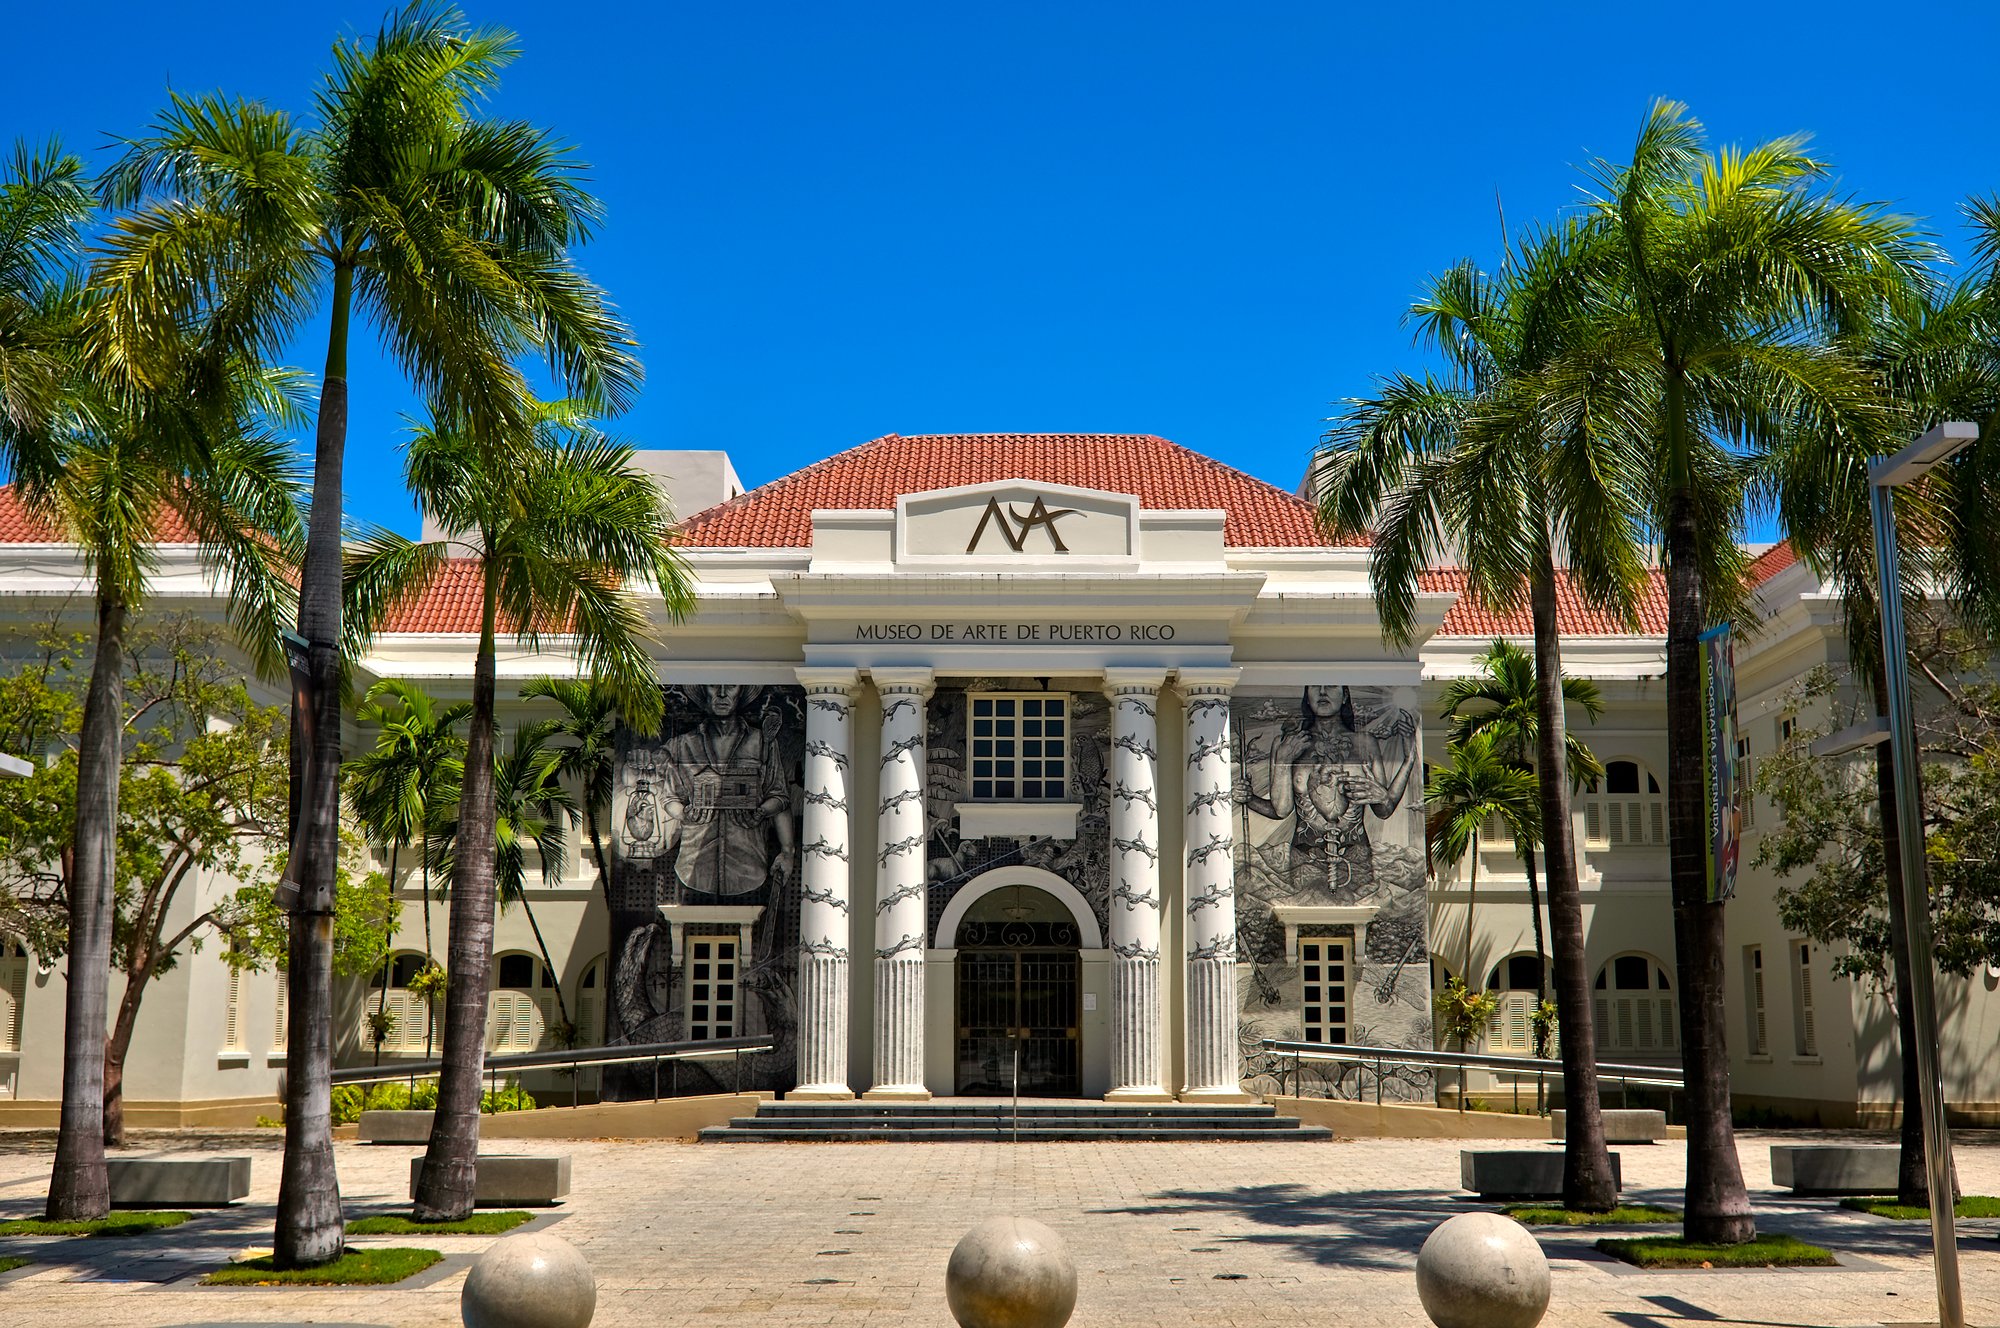 Exterior of the Museo de Arte de Puerto Rico, framed by palm trees